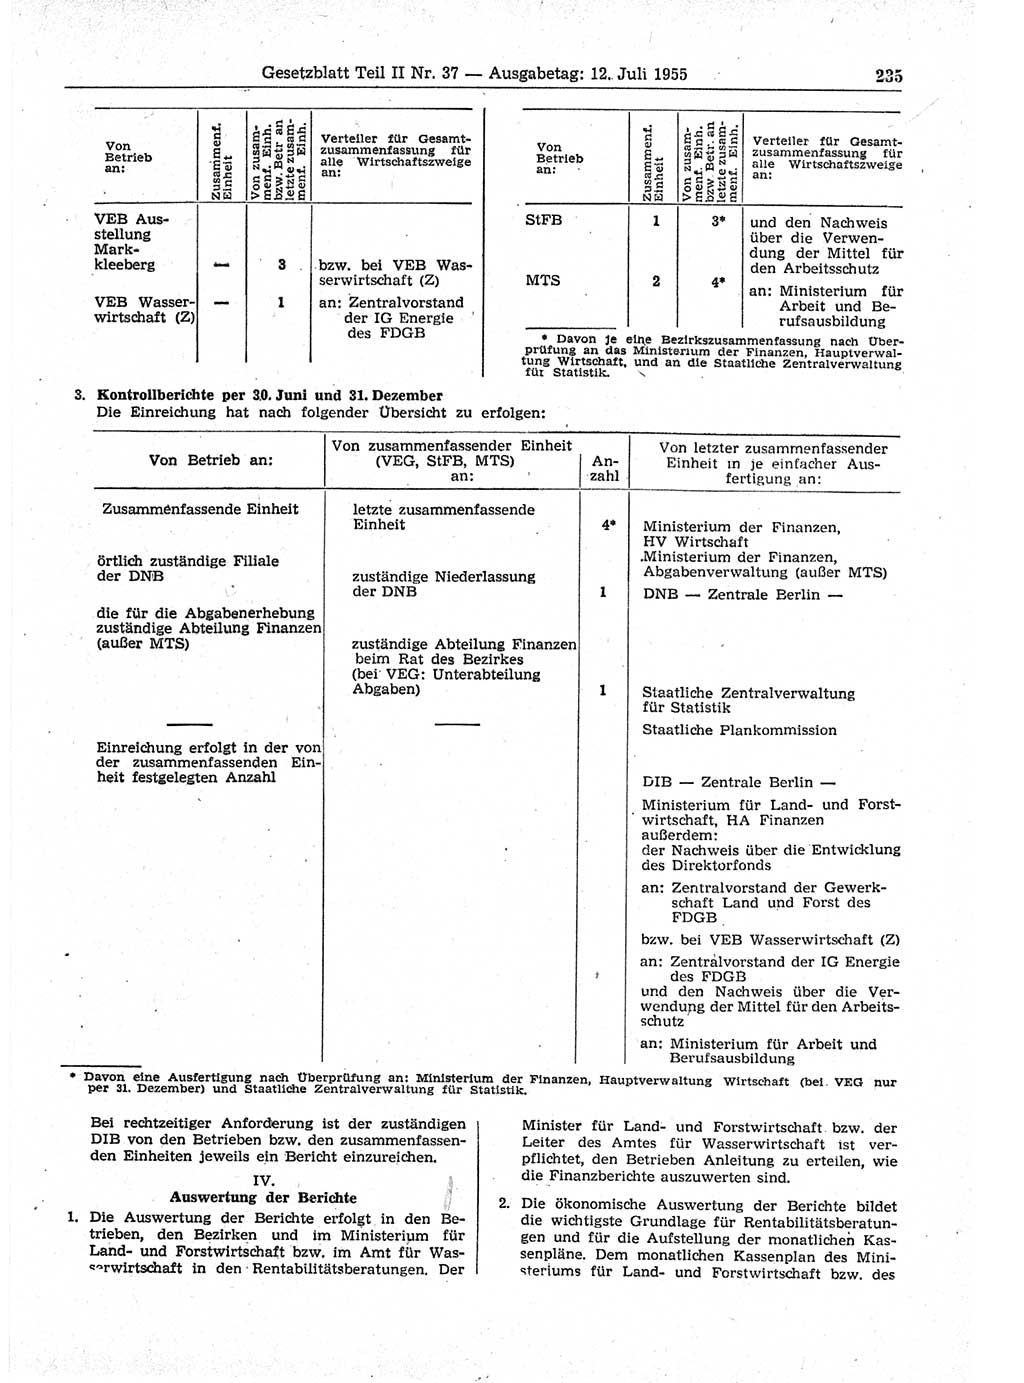 Gesetzblatt (GBl.) der Deutschen Demokratischen Republik (DDR) Teil ⅠⅠ 1955, Seite 235 (GBl. DDR ⅠⅠ 1955, S. 235)